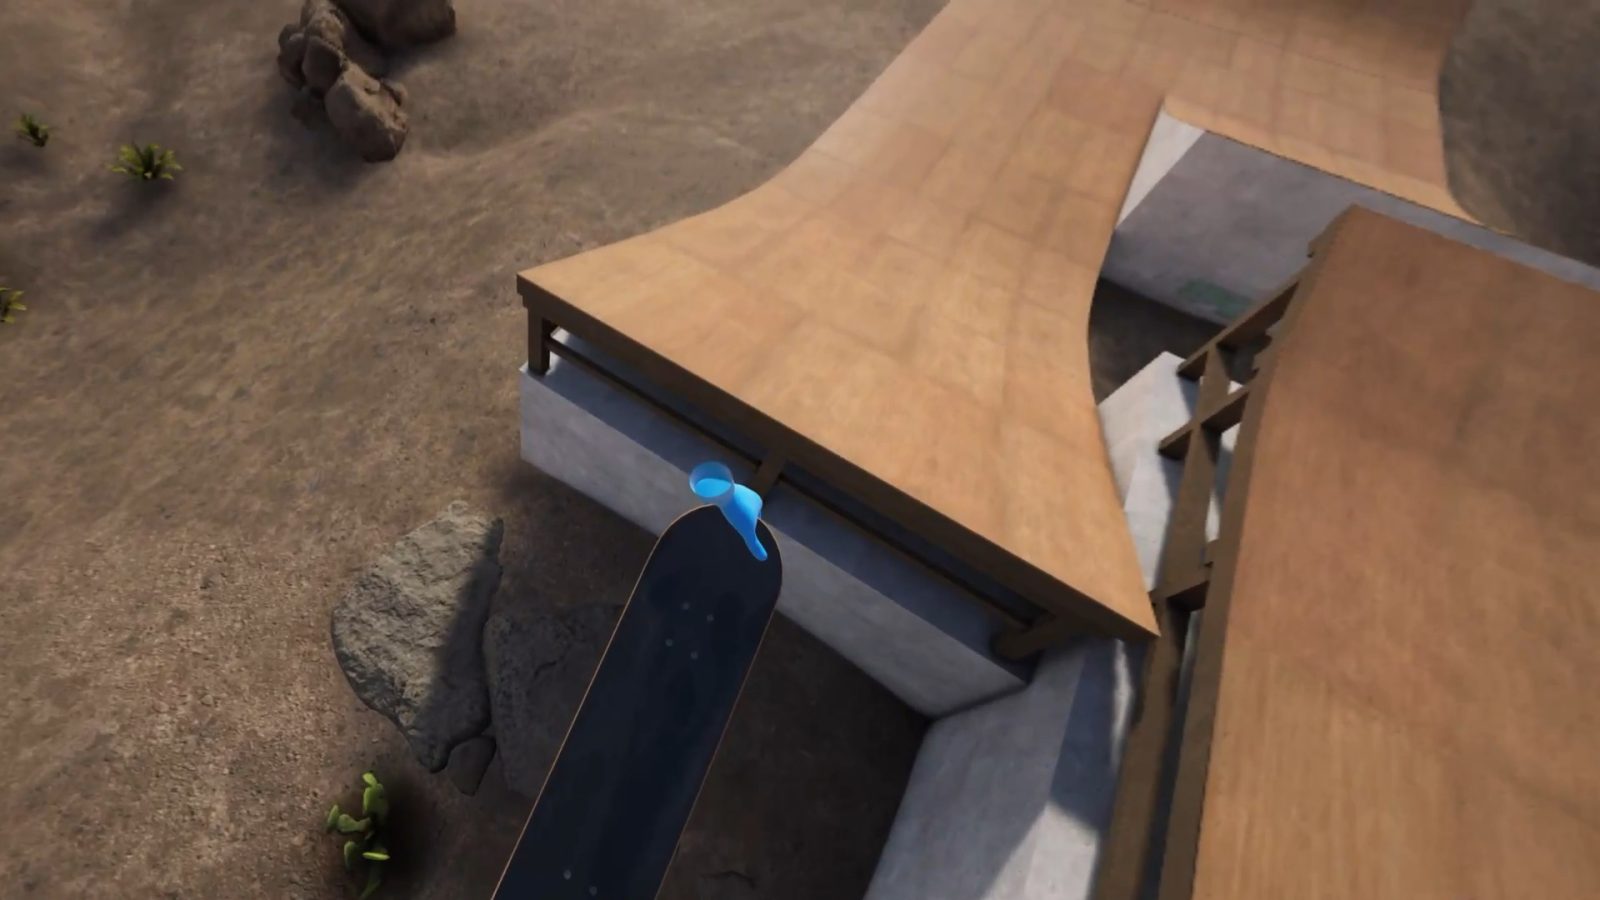 Review: VR Skater. The best VR skateboarding game I've…, by Cat Noir VR